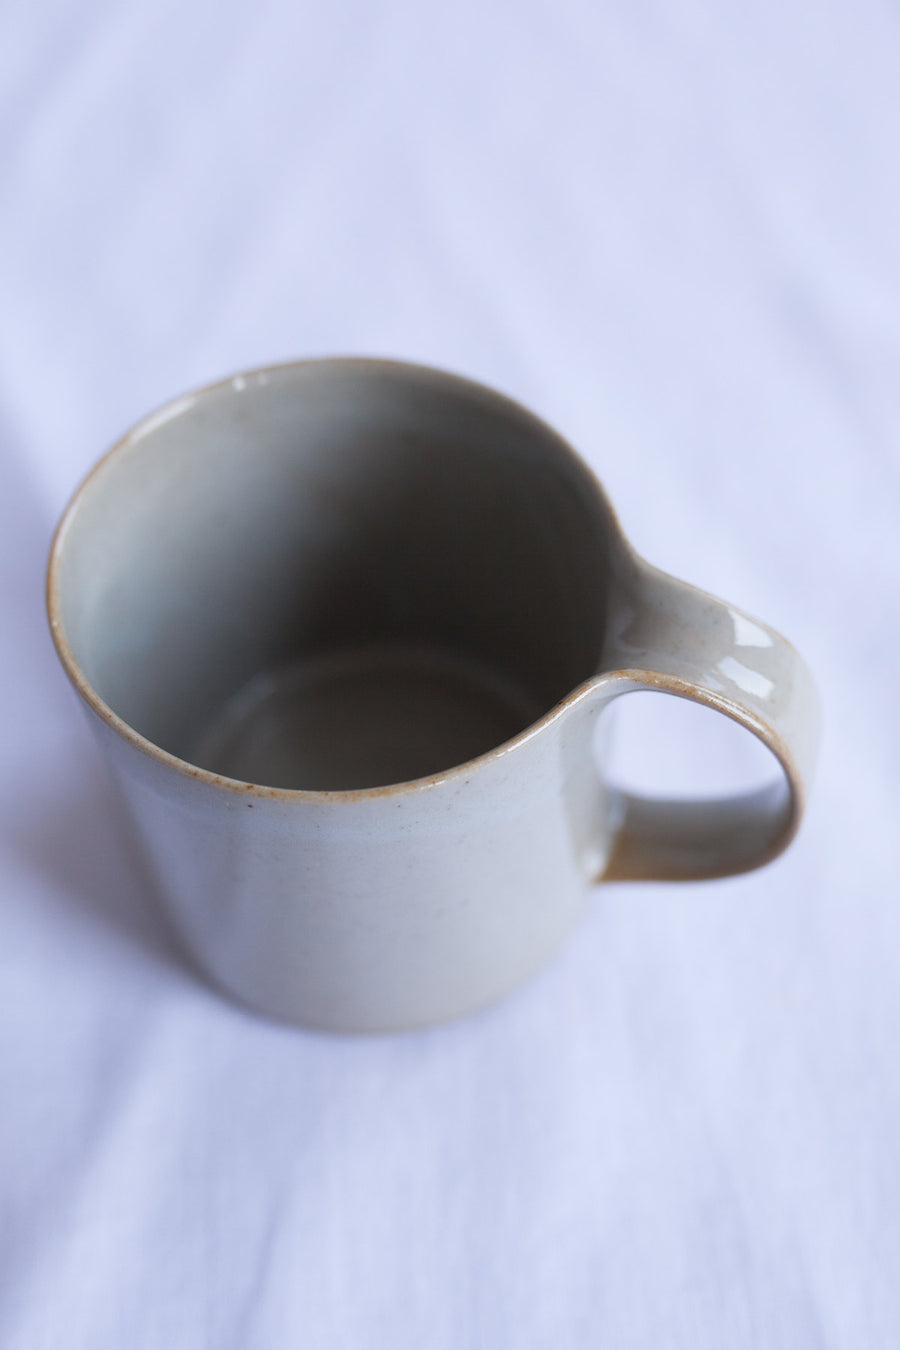 ceramic japan モデラート/マグカップ(ナチュラル)